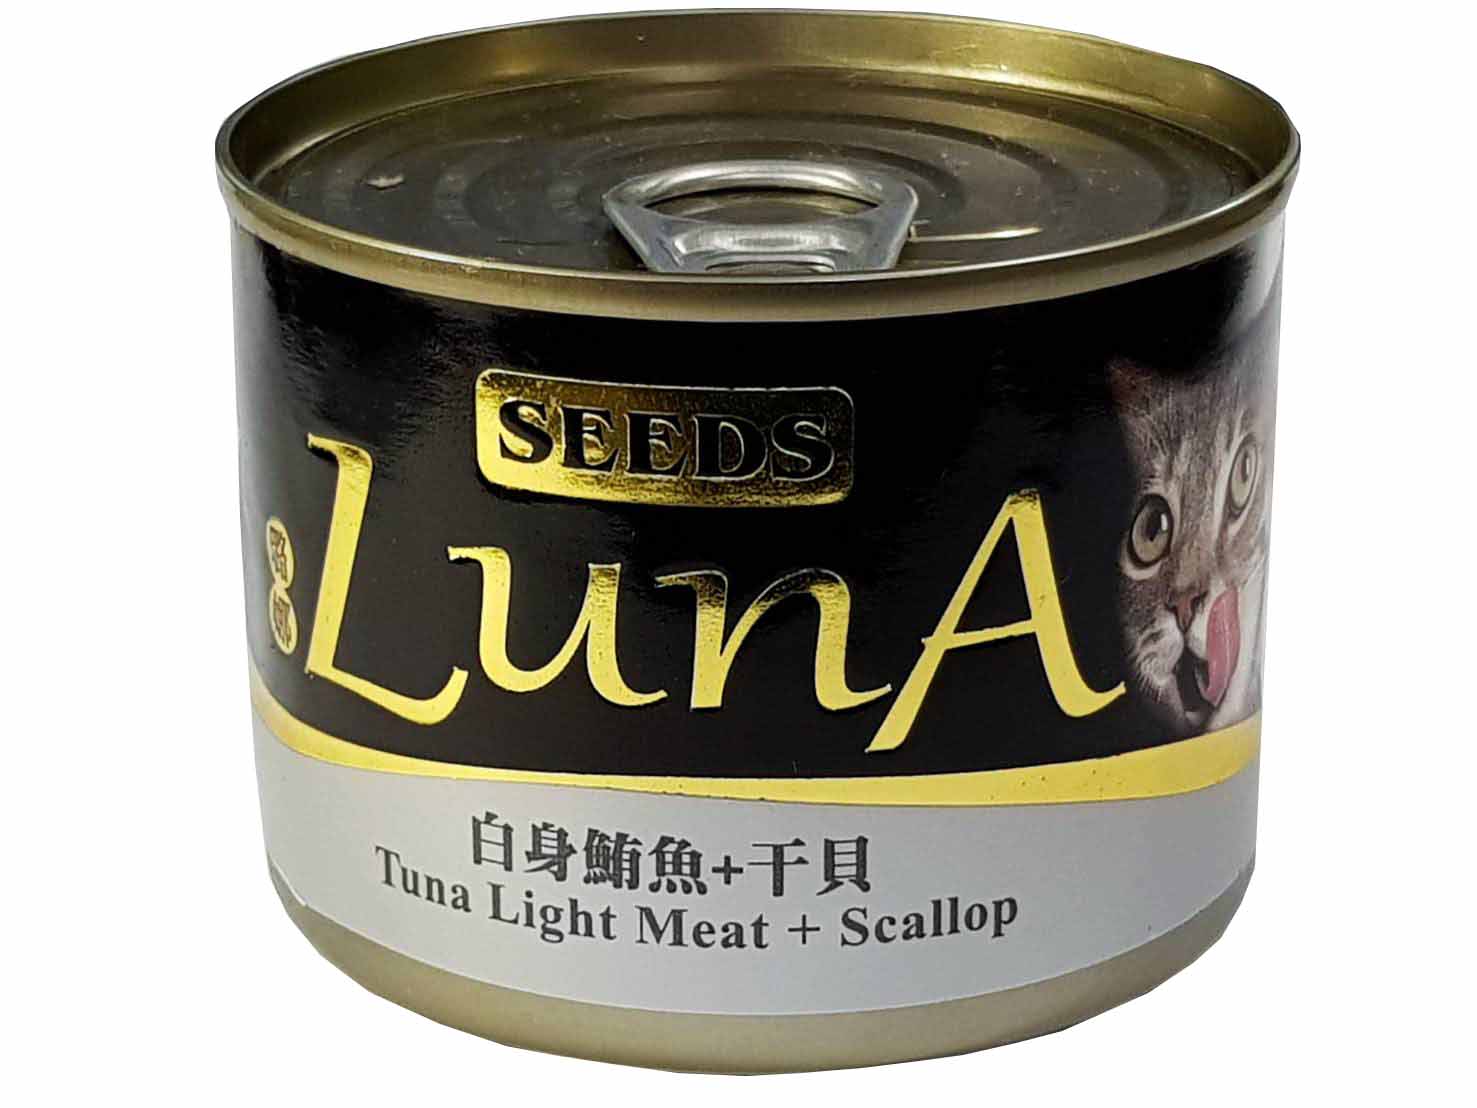 LunA璐娜愛貓機能餐罐(白身鮪魚+干貝)
PX LunA170g(TU/SCP)